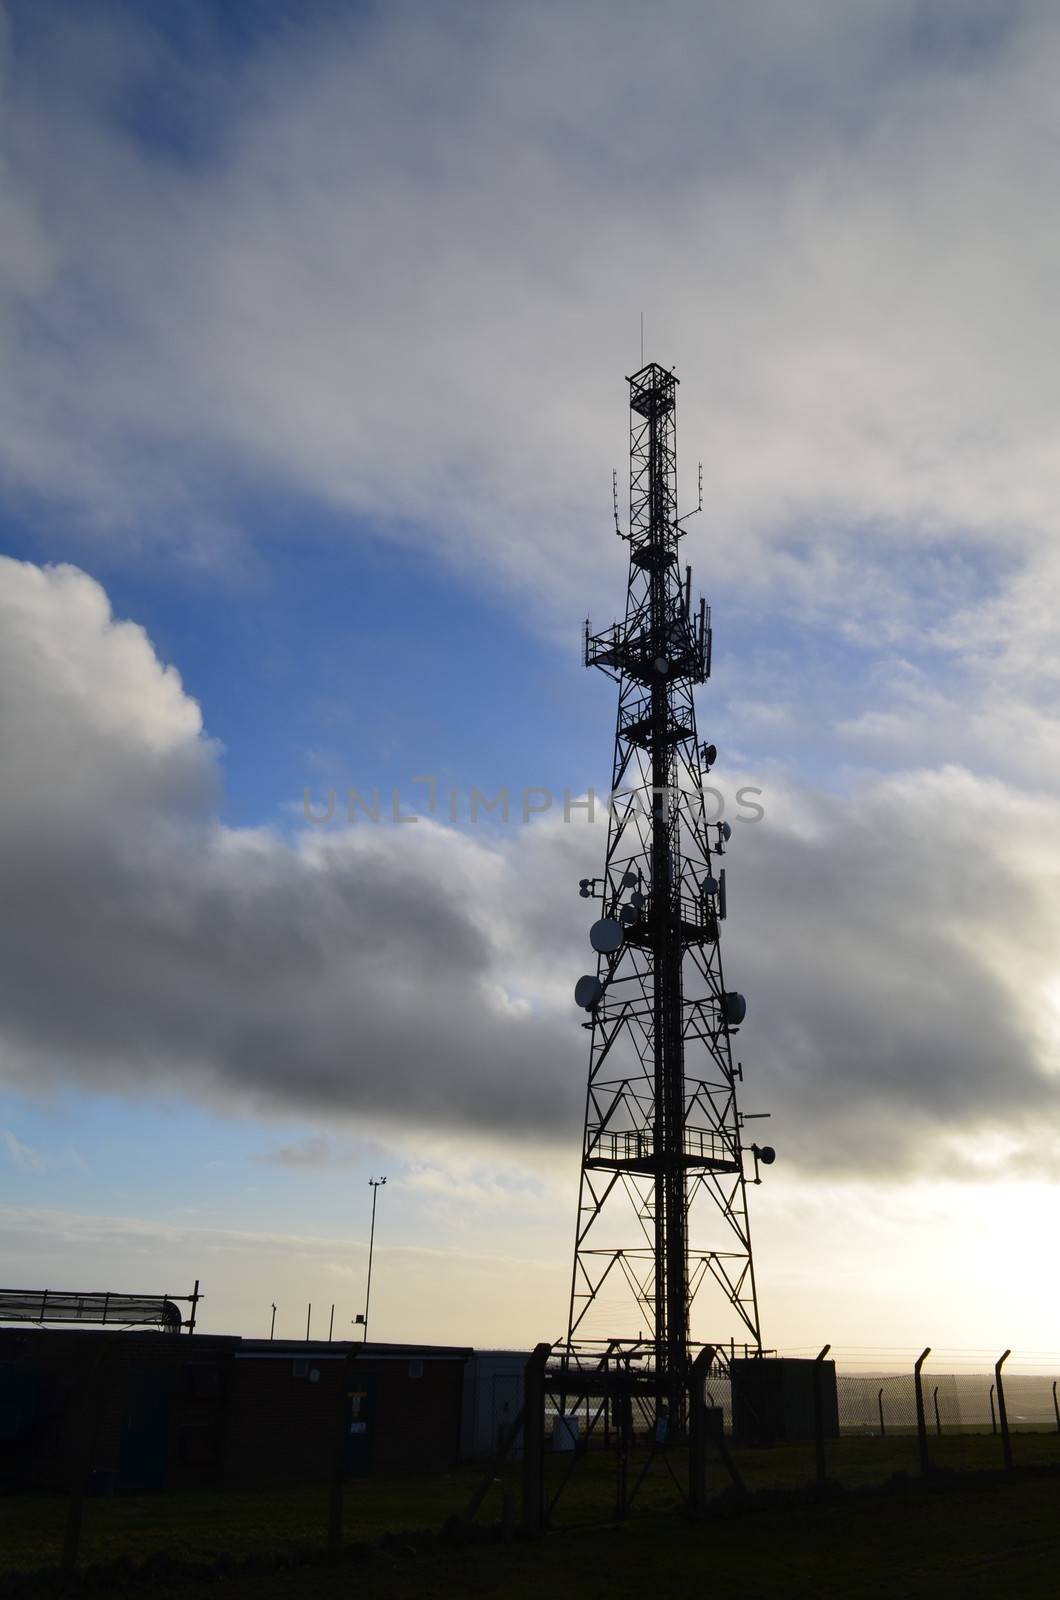 Large communication mast in England.